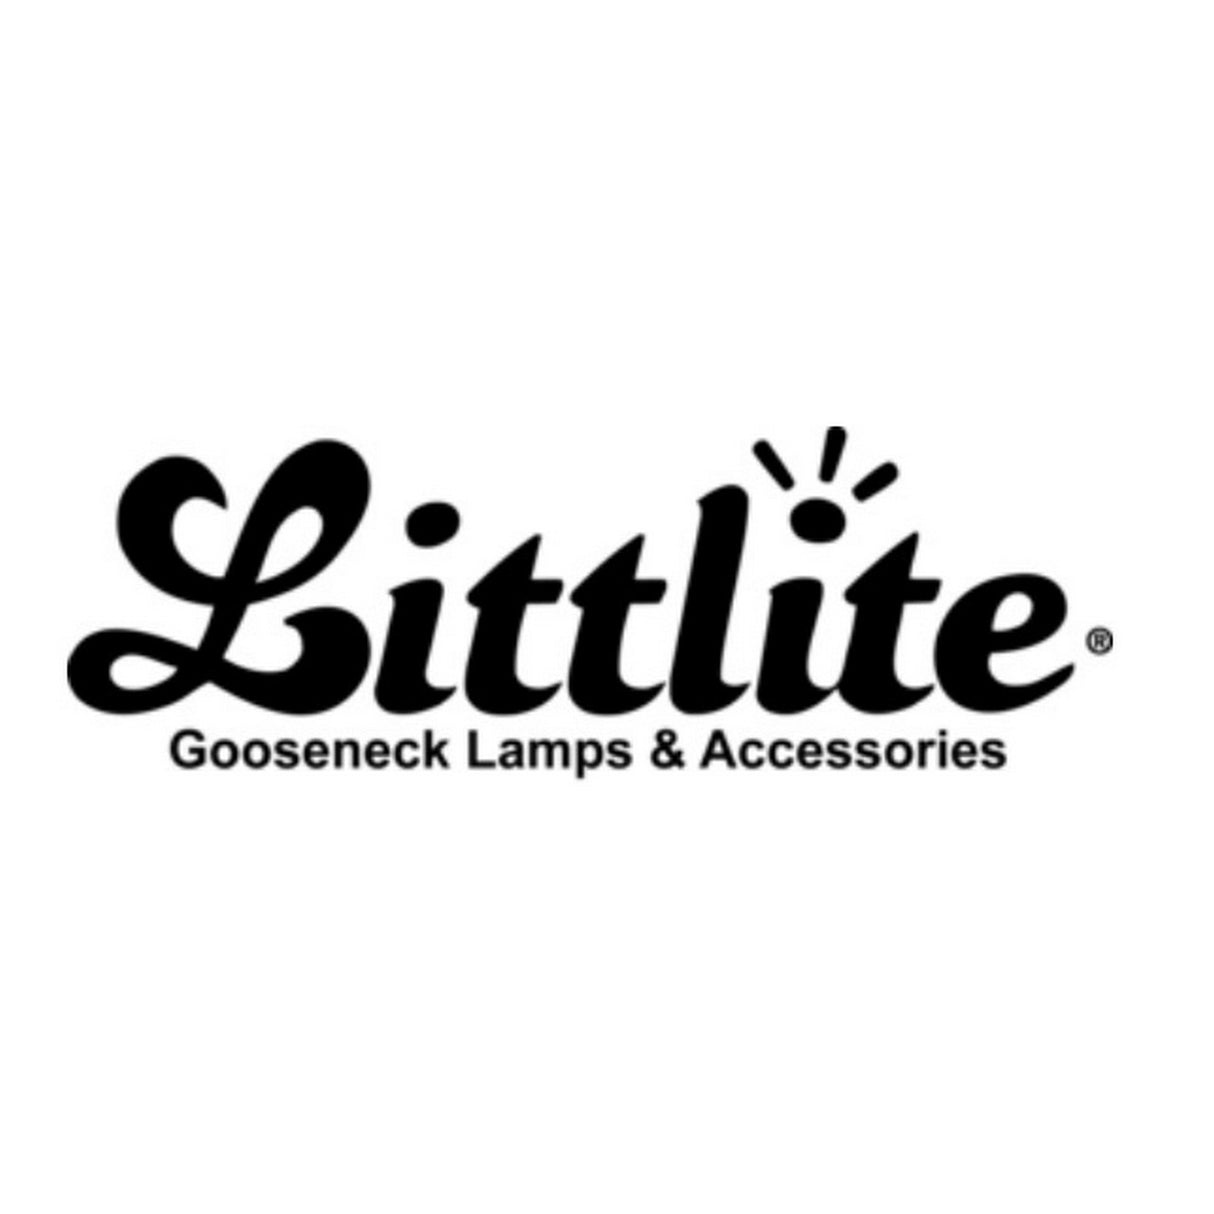 Littlite L-12A-LED | 12 Inch Gooseneck LED Lampset Light with Power Supply Delete